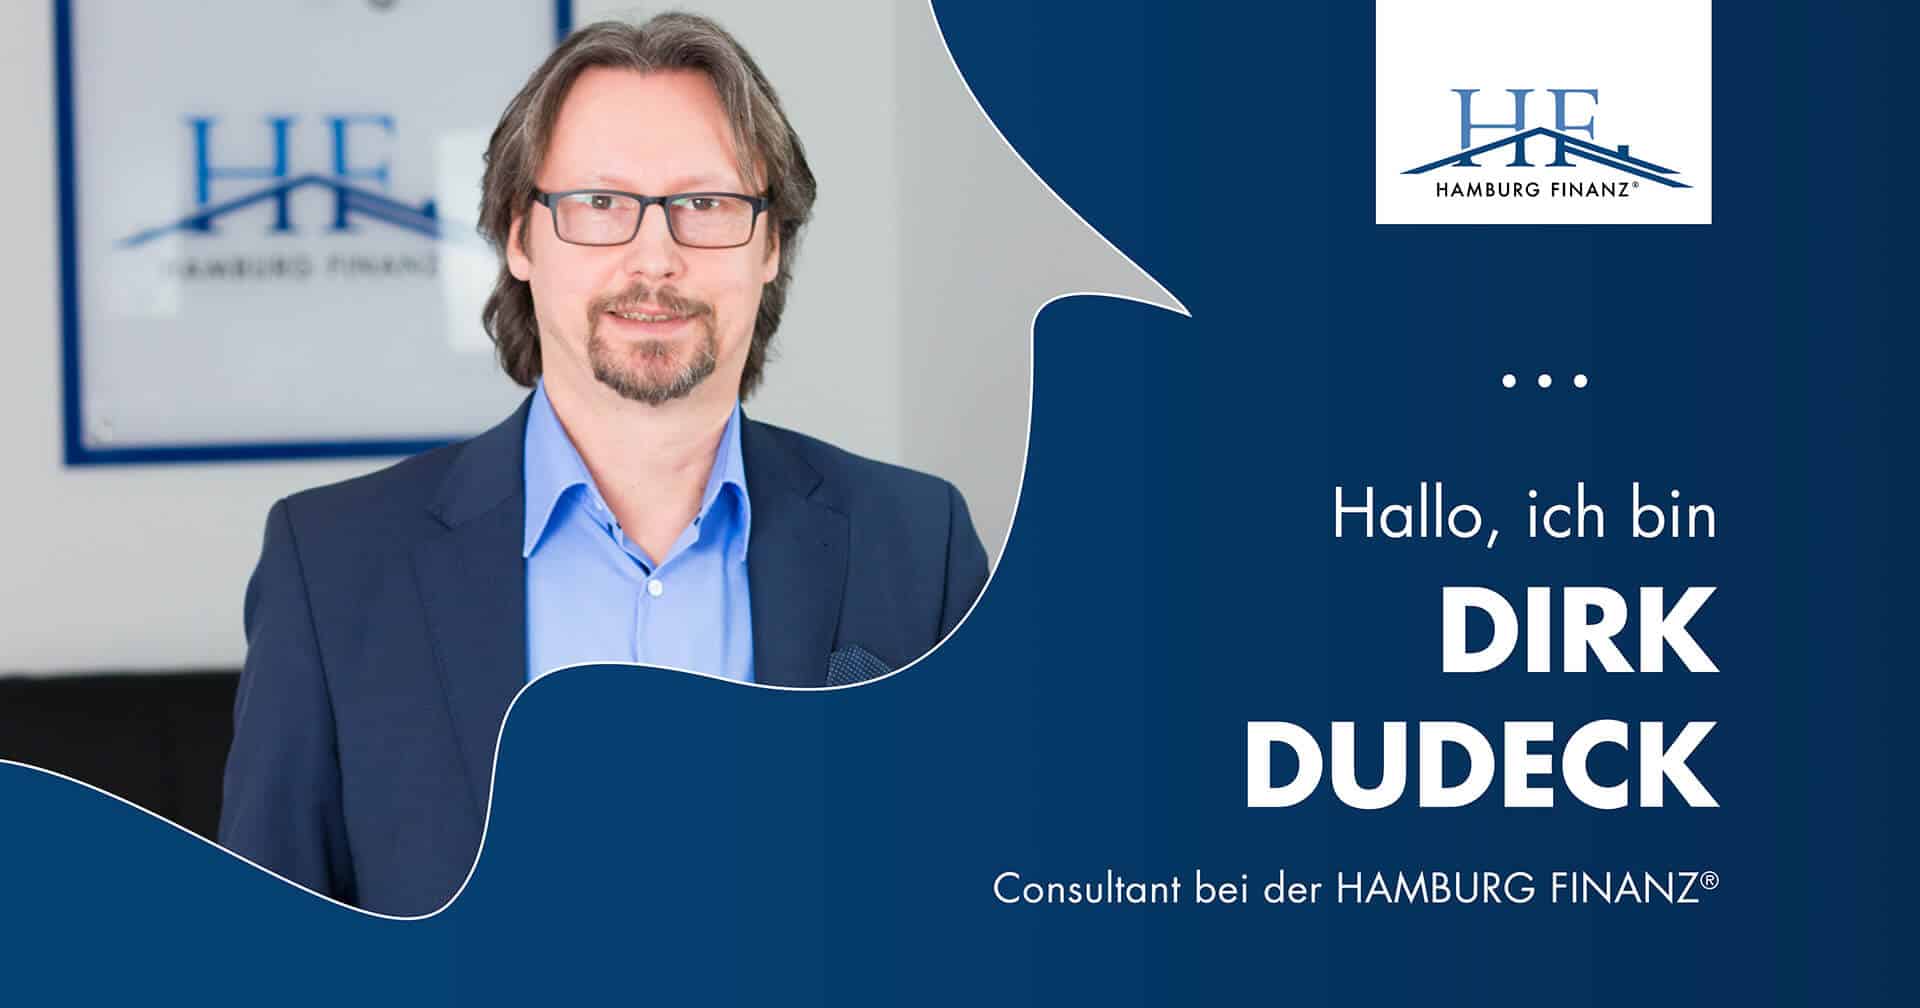 Herr Dudeck Hamburg Finanz